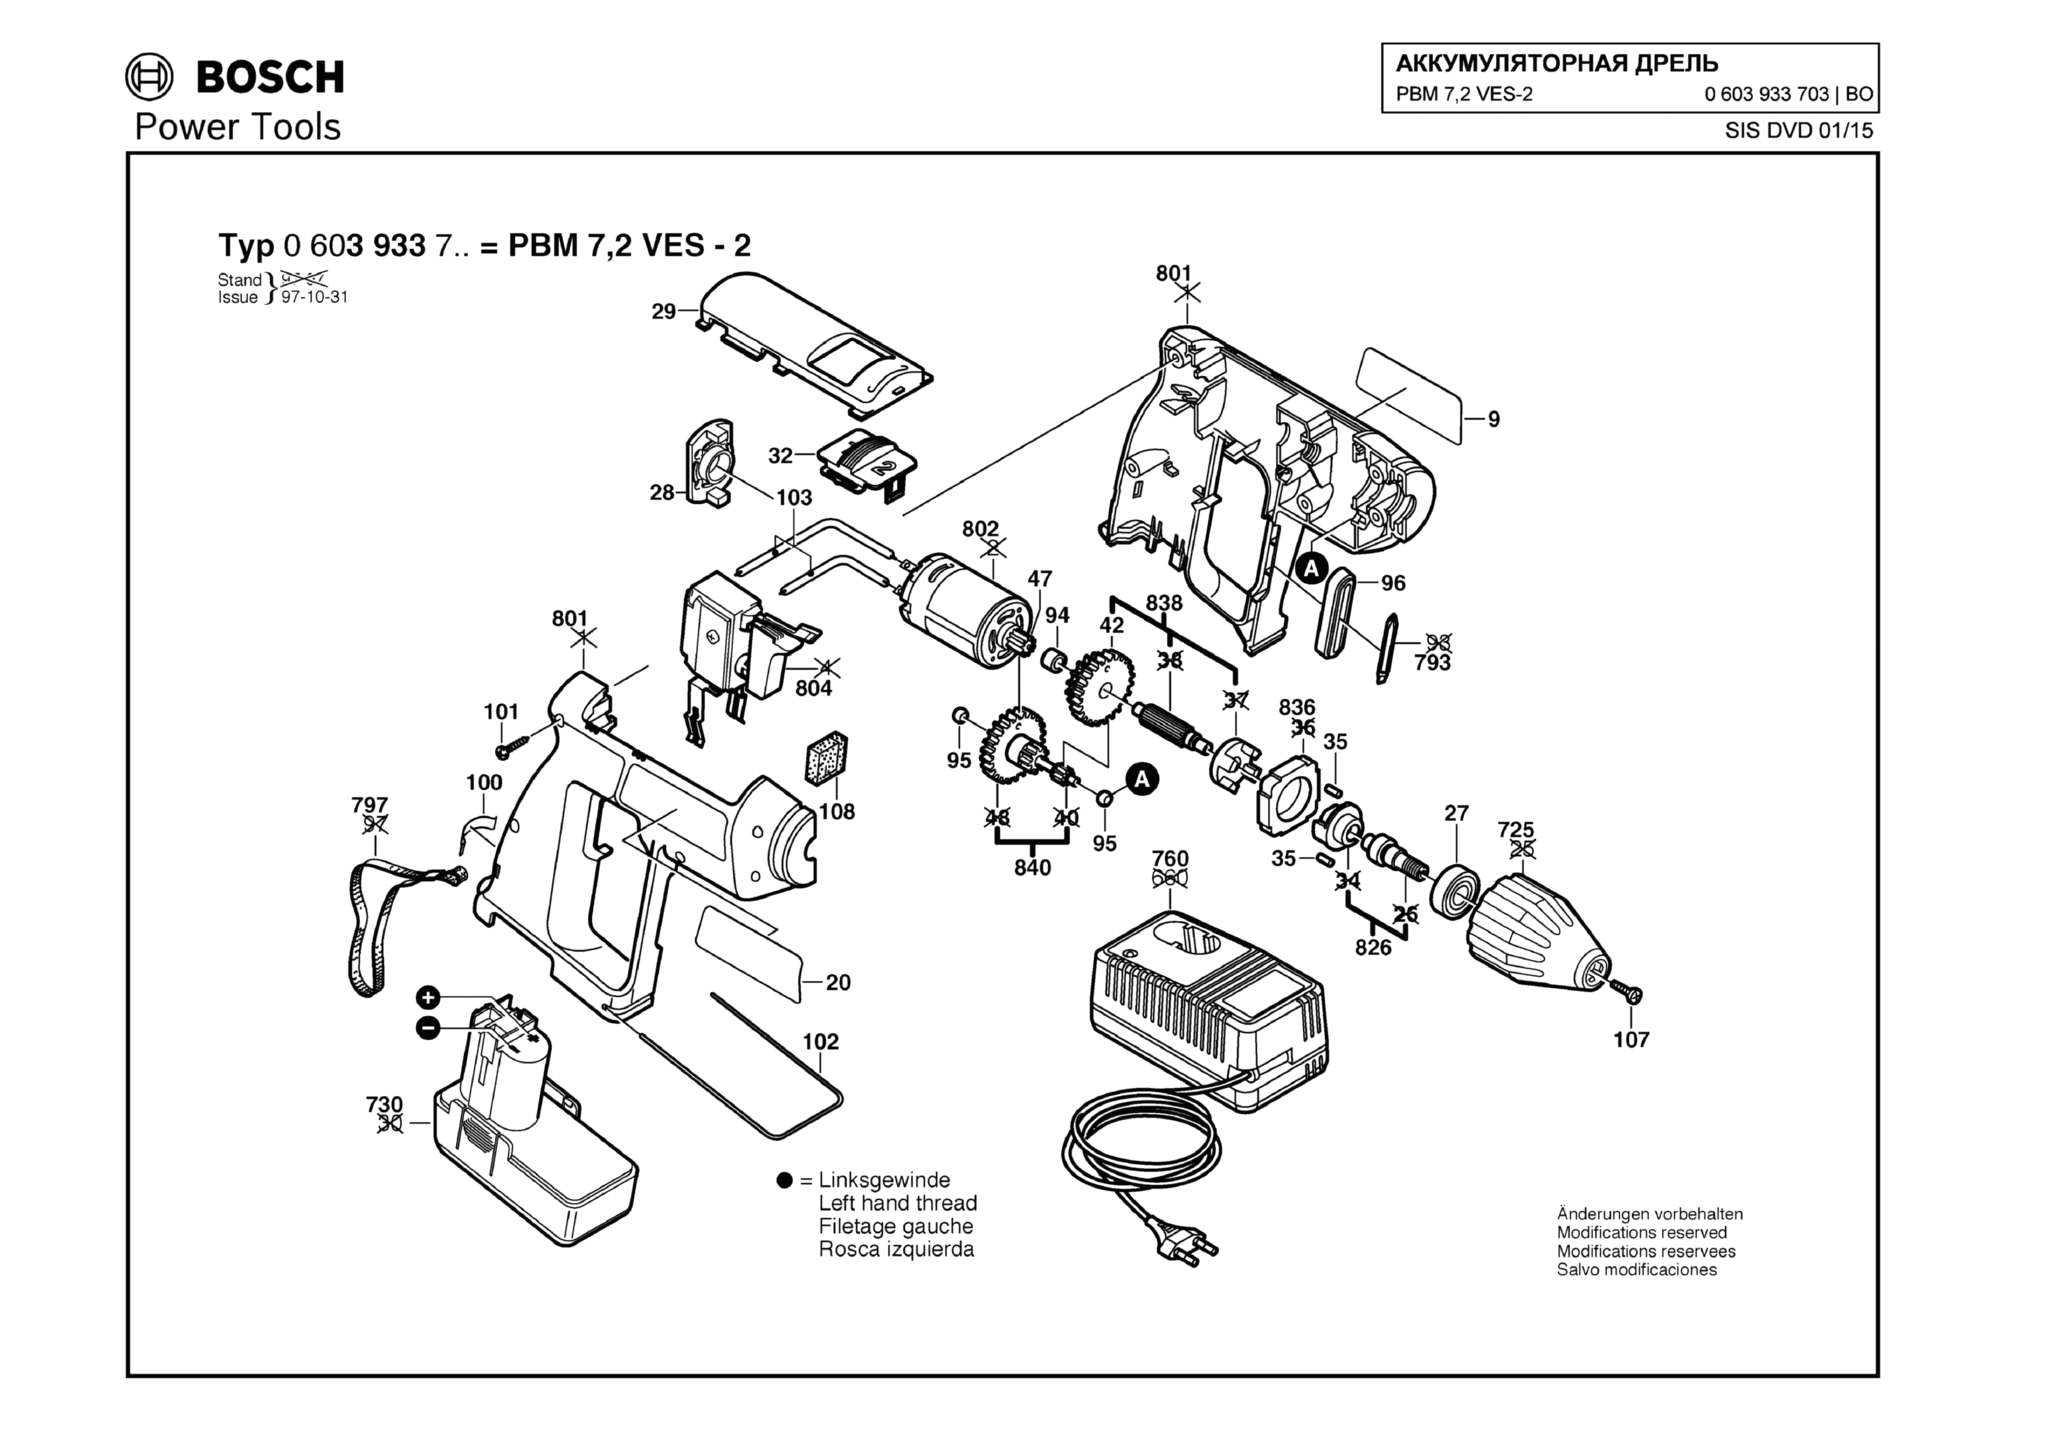 Запчасти, схема и деталировка Bosch PBM 7,2 VES-2 (ТИП 0603933703)